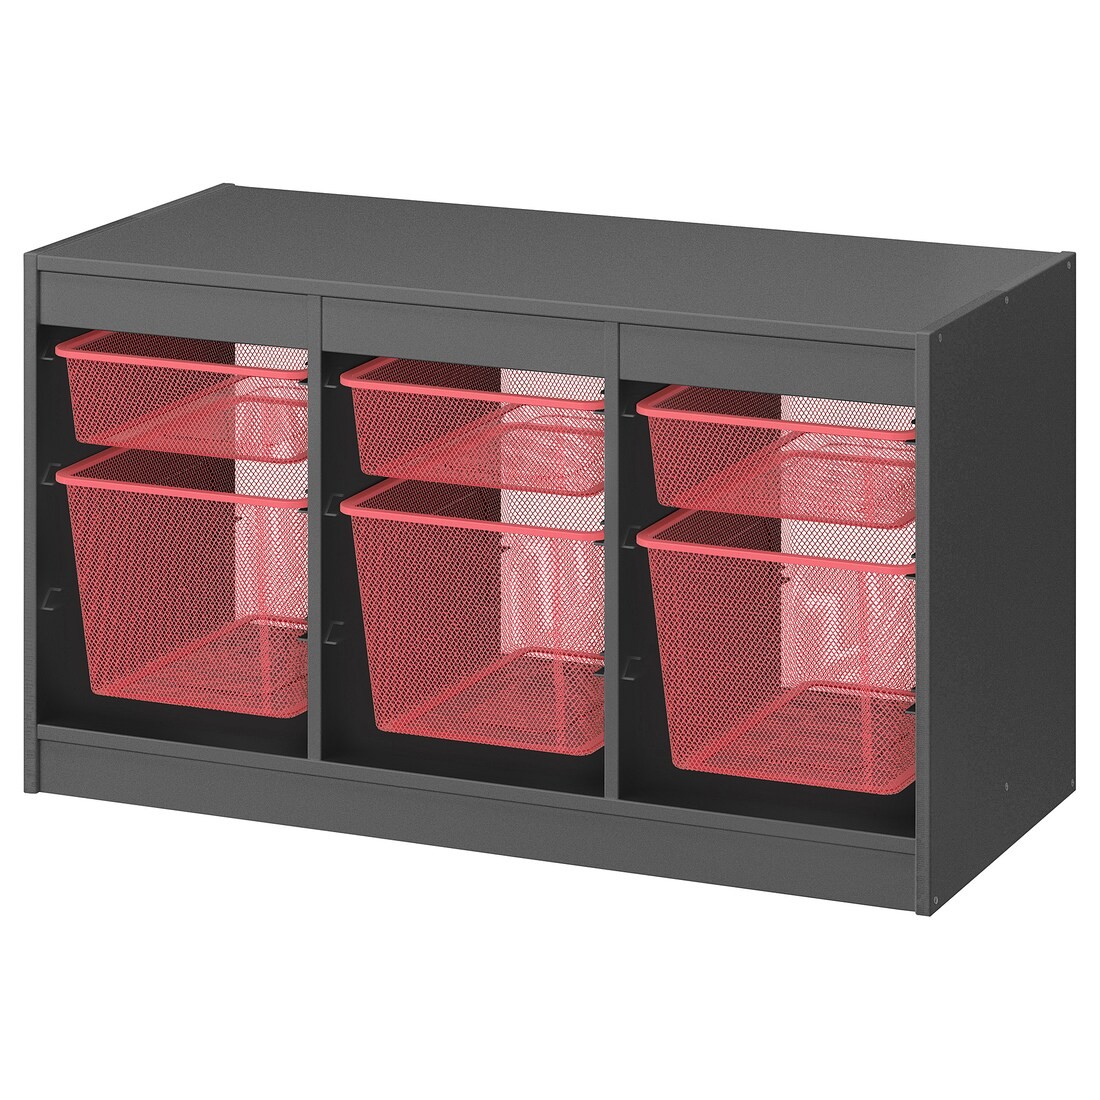 TROFAST ТРУФАСТ Комбинация для хранения + контейнеры, серый / светло-красный